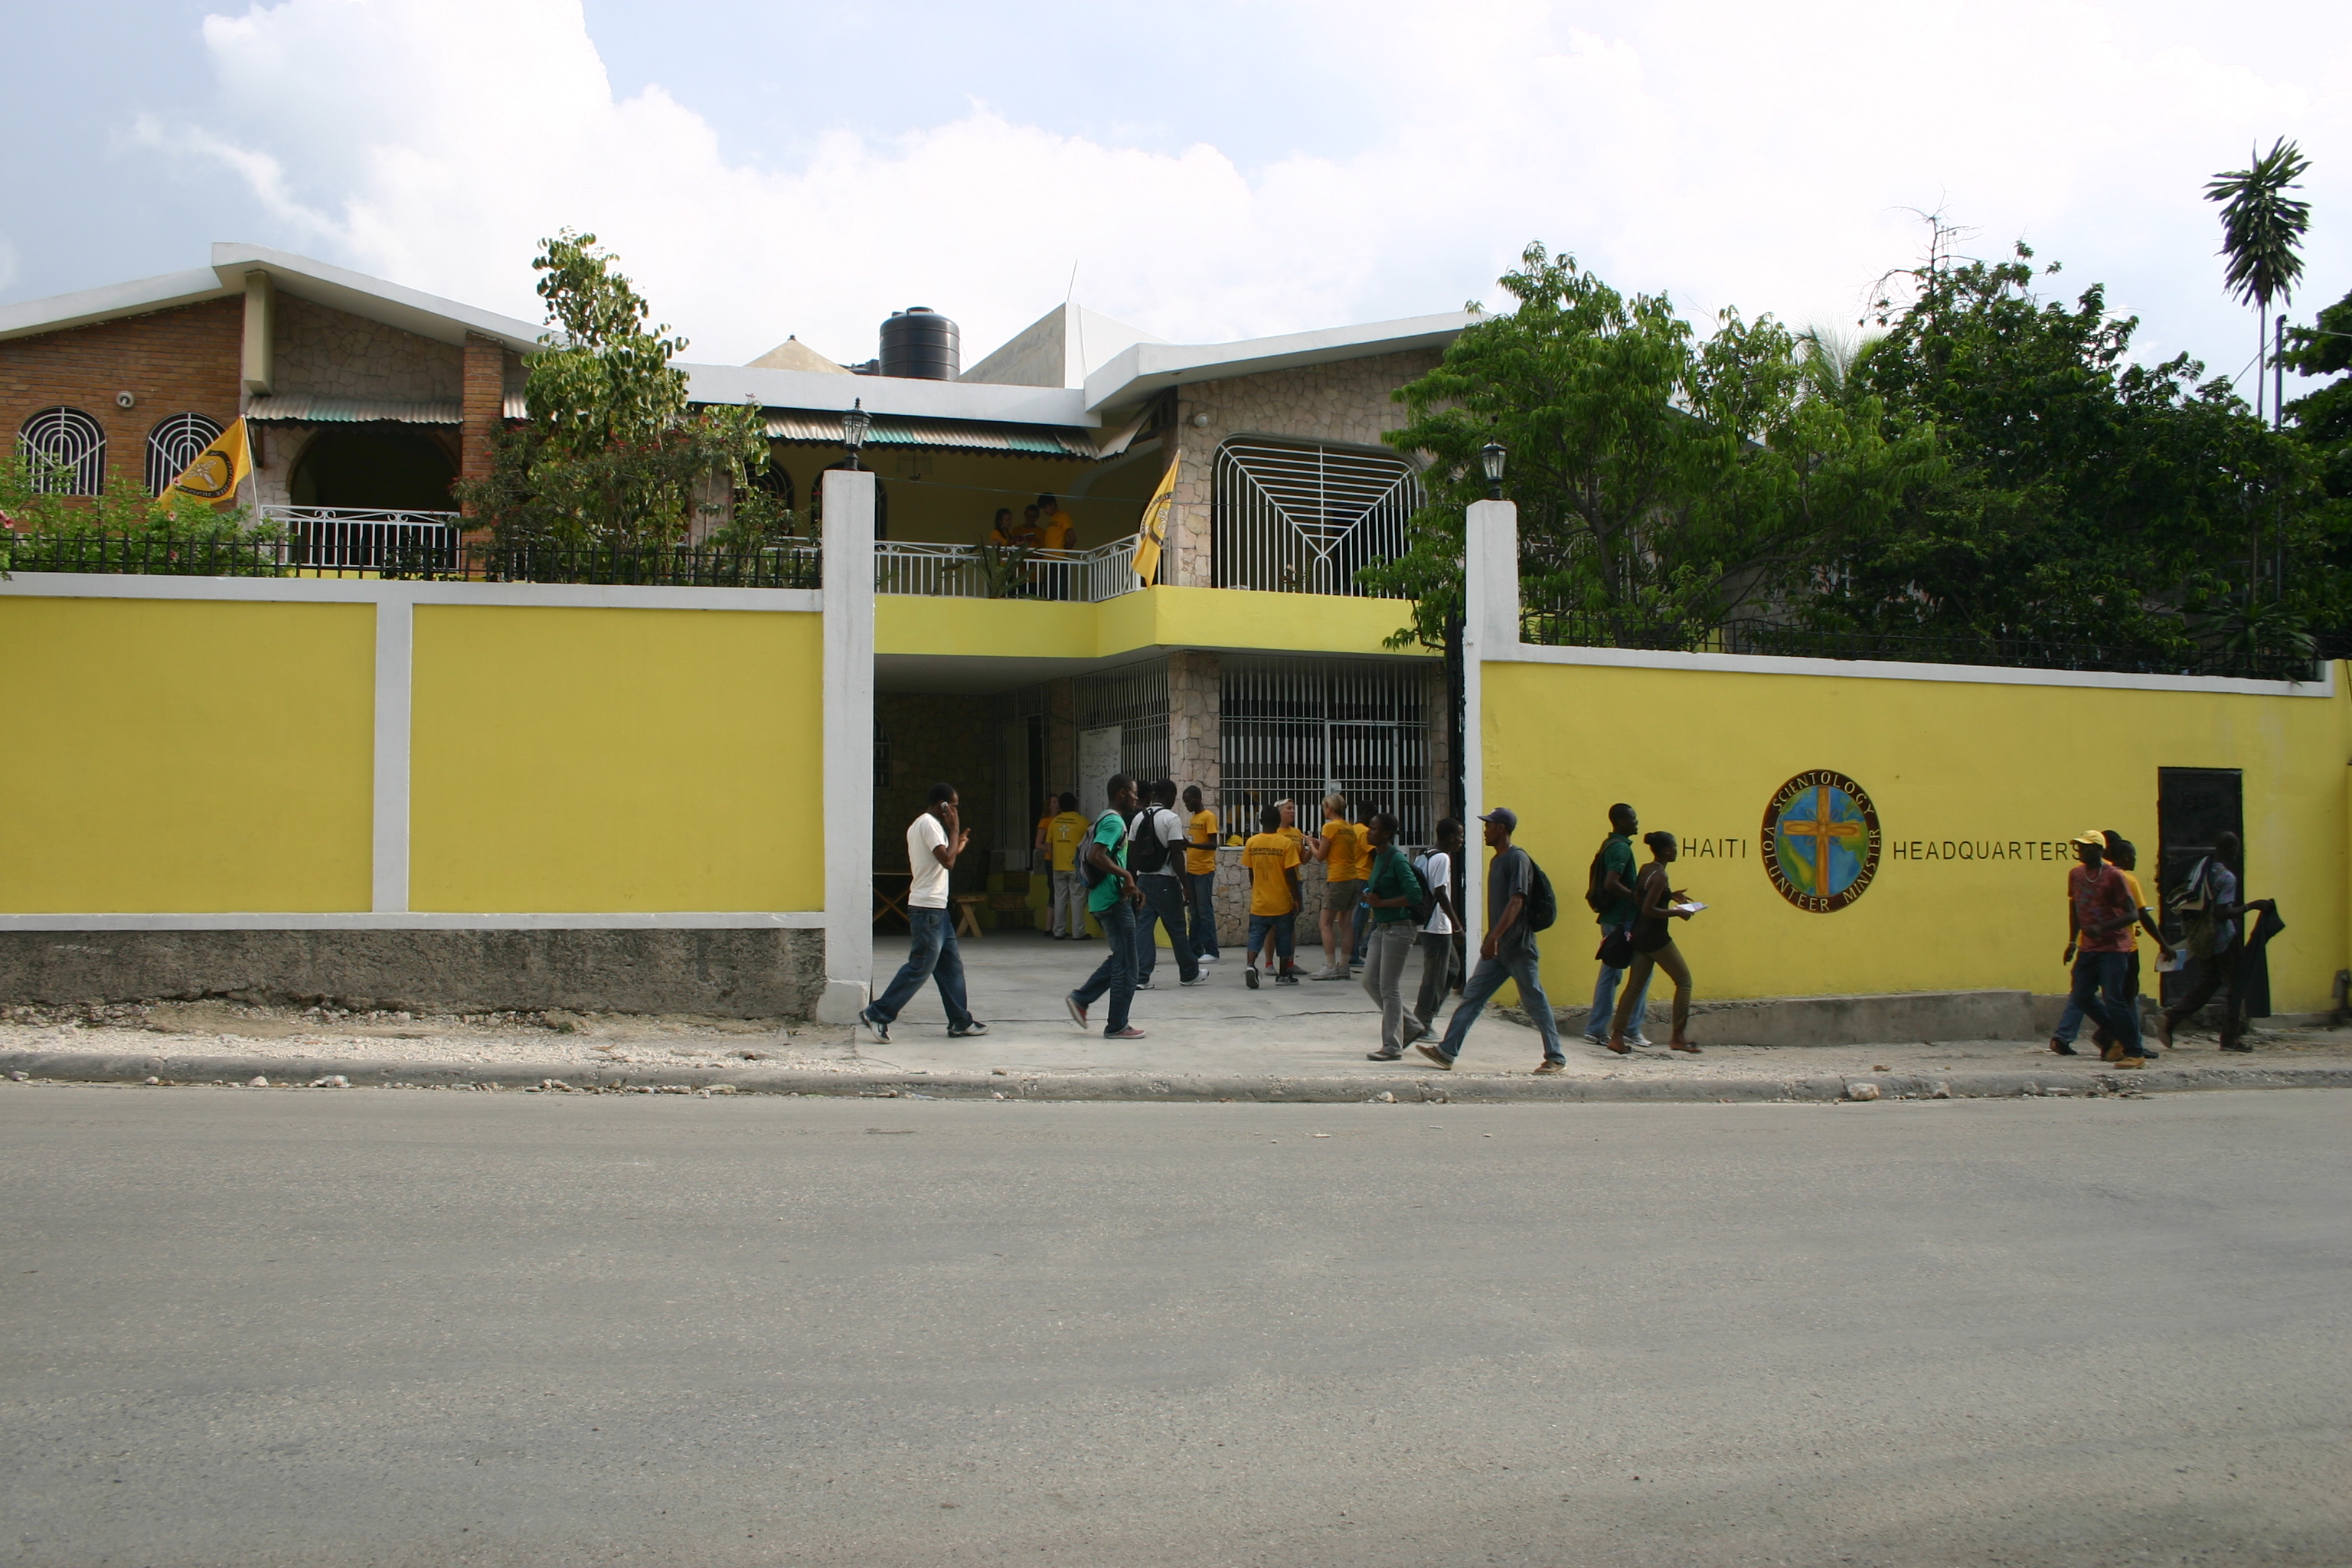 La nueva casa de 3 pisos de los Ministros Voluntarios en Haití permite la entrega segura y eficiente de ayuda a la población haitiana.